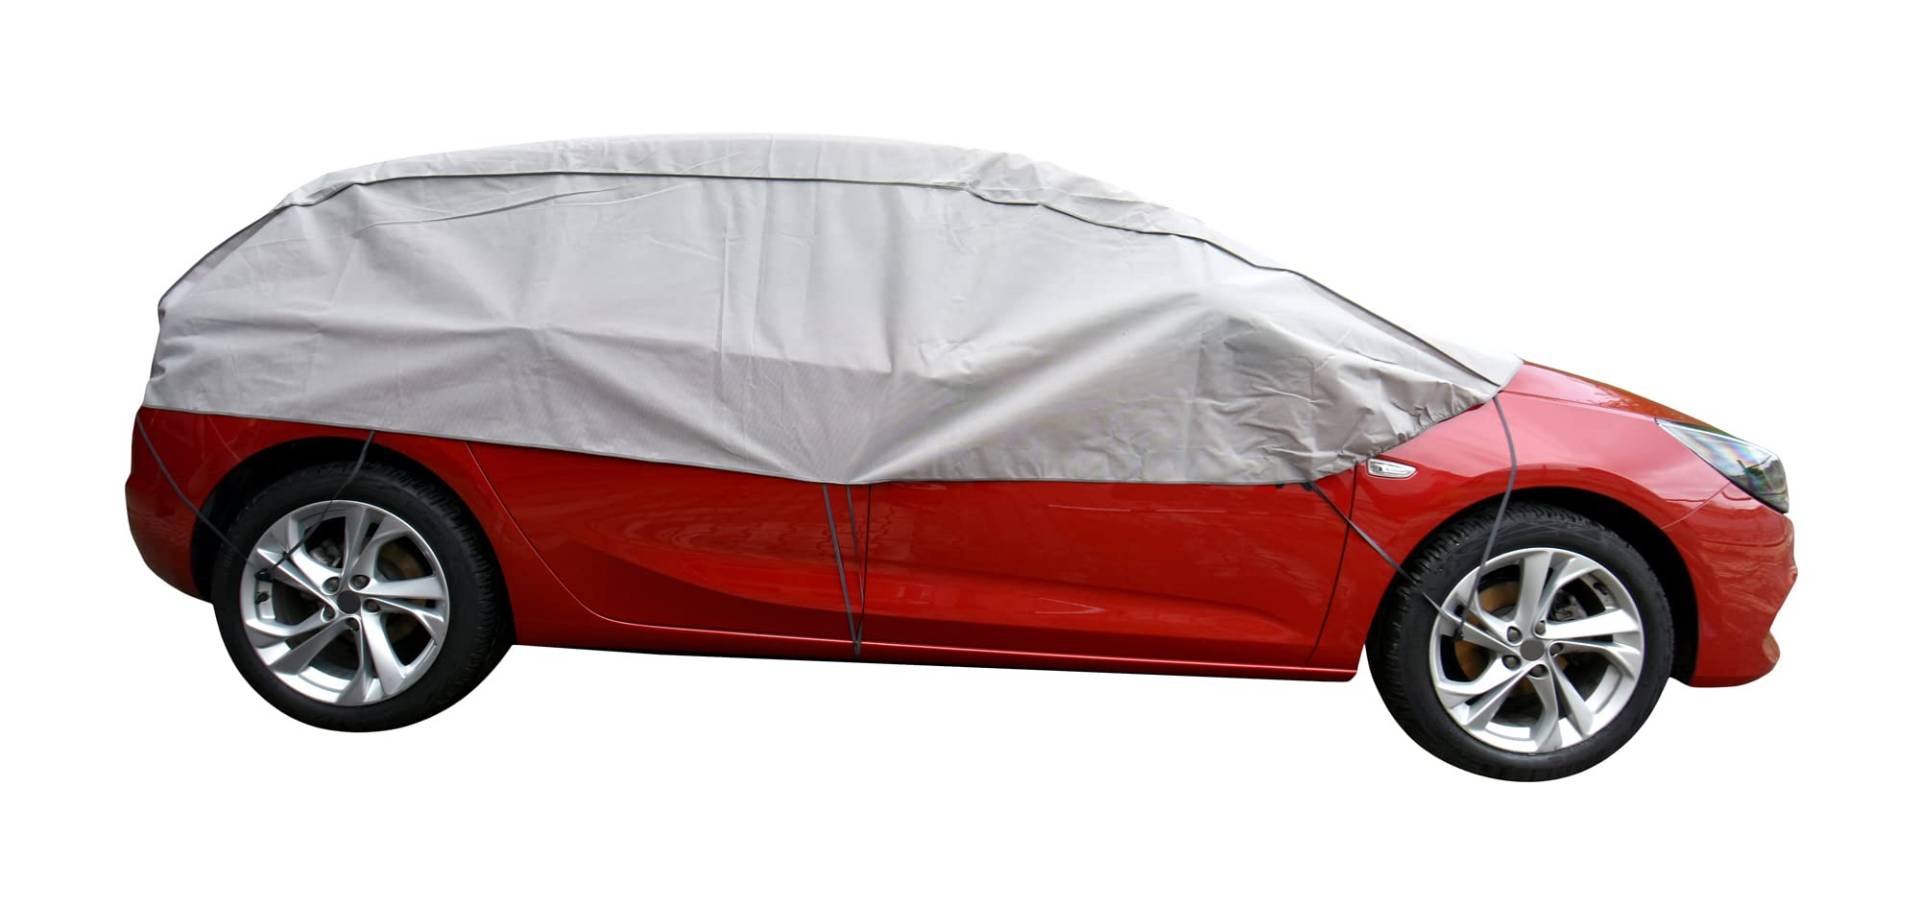 Scheibenschutz Halbgarage für Winter Sommer Herbst kompatibel mit Dacia Sandero - Autoabdeckung Kleinwagen grau Aussen und Ihnnen Bereich von Z4L